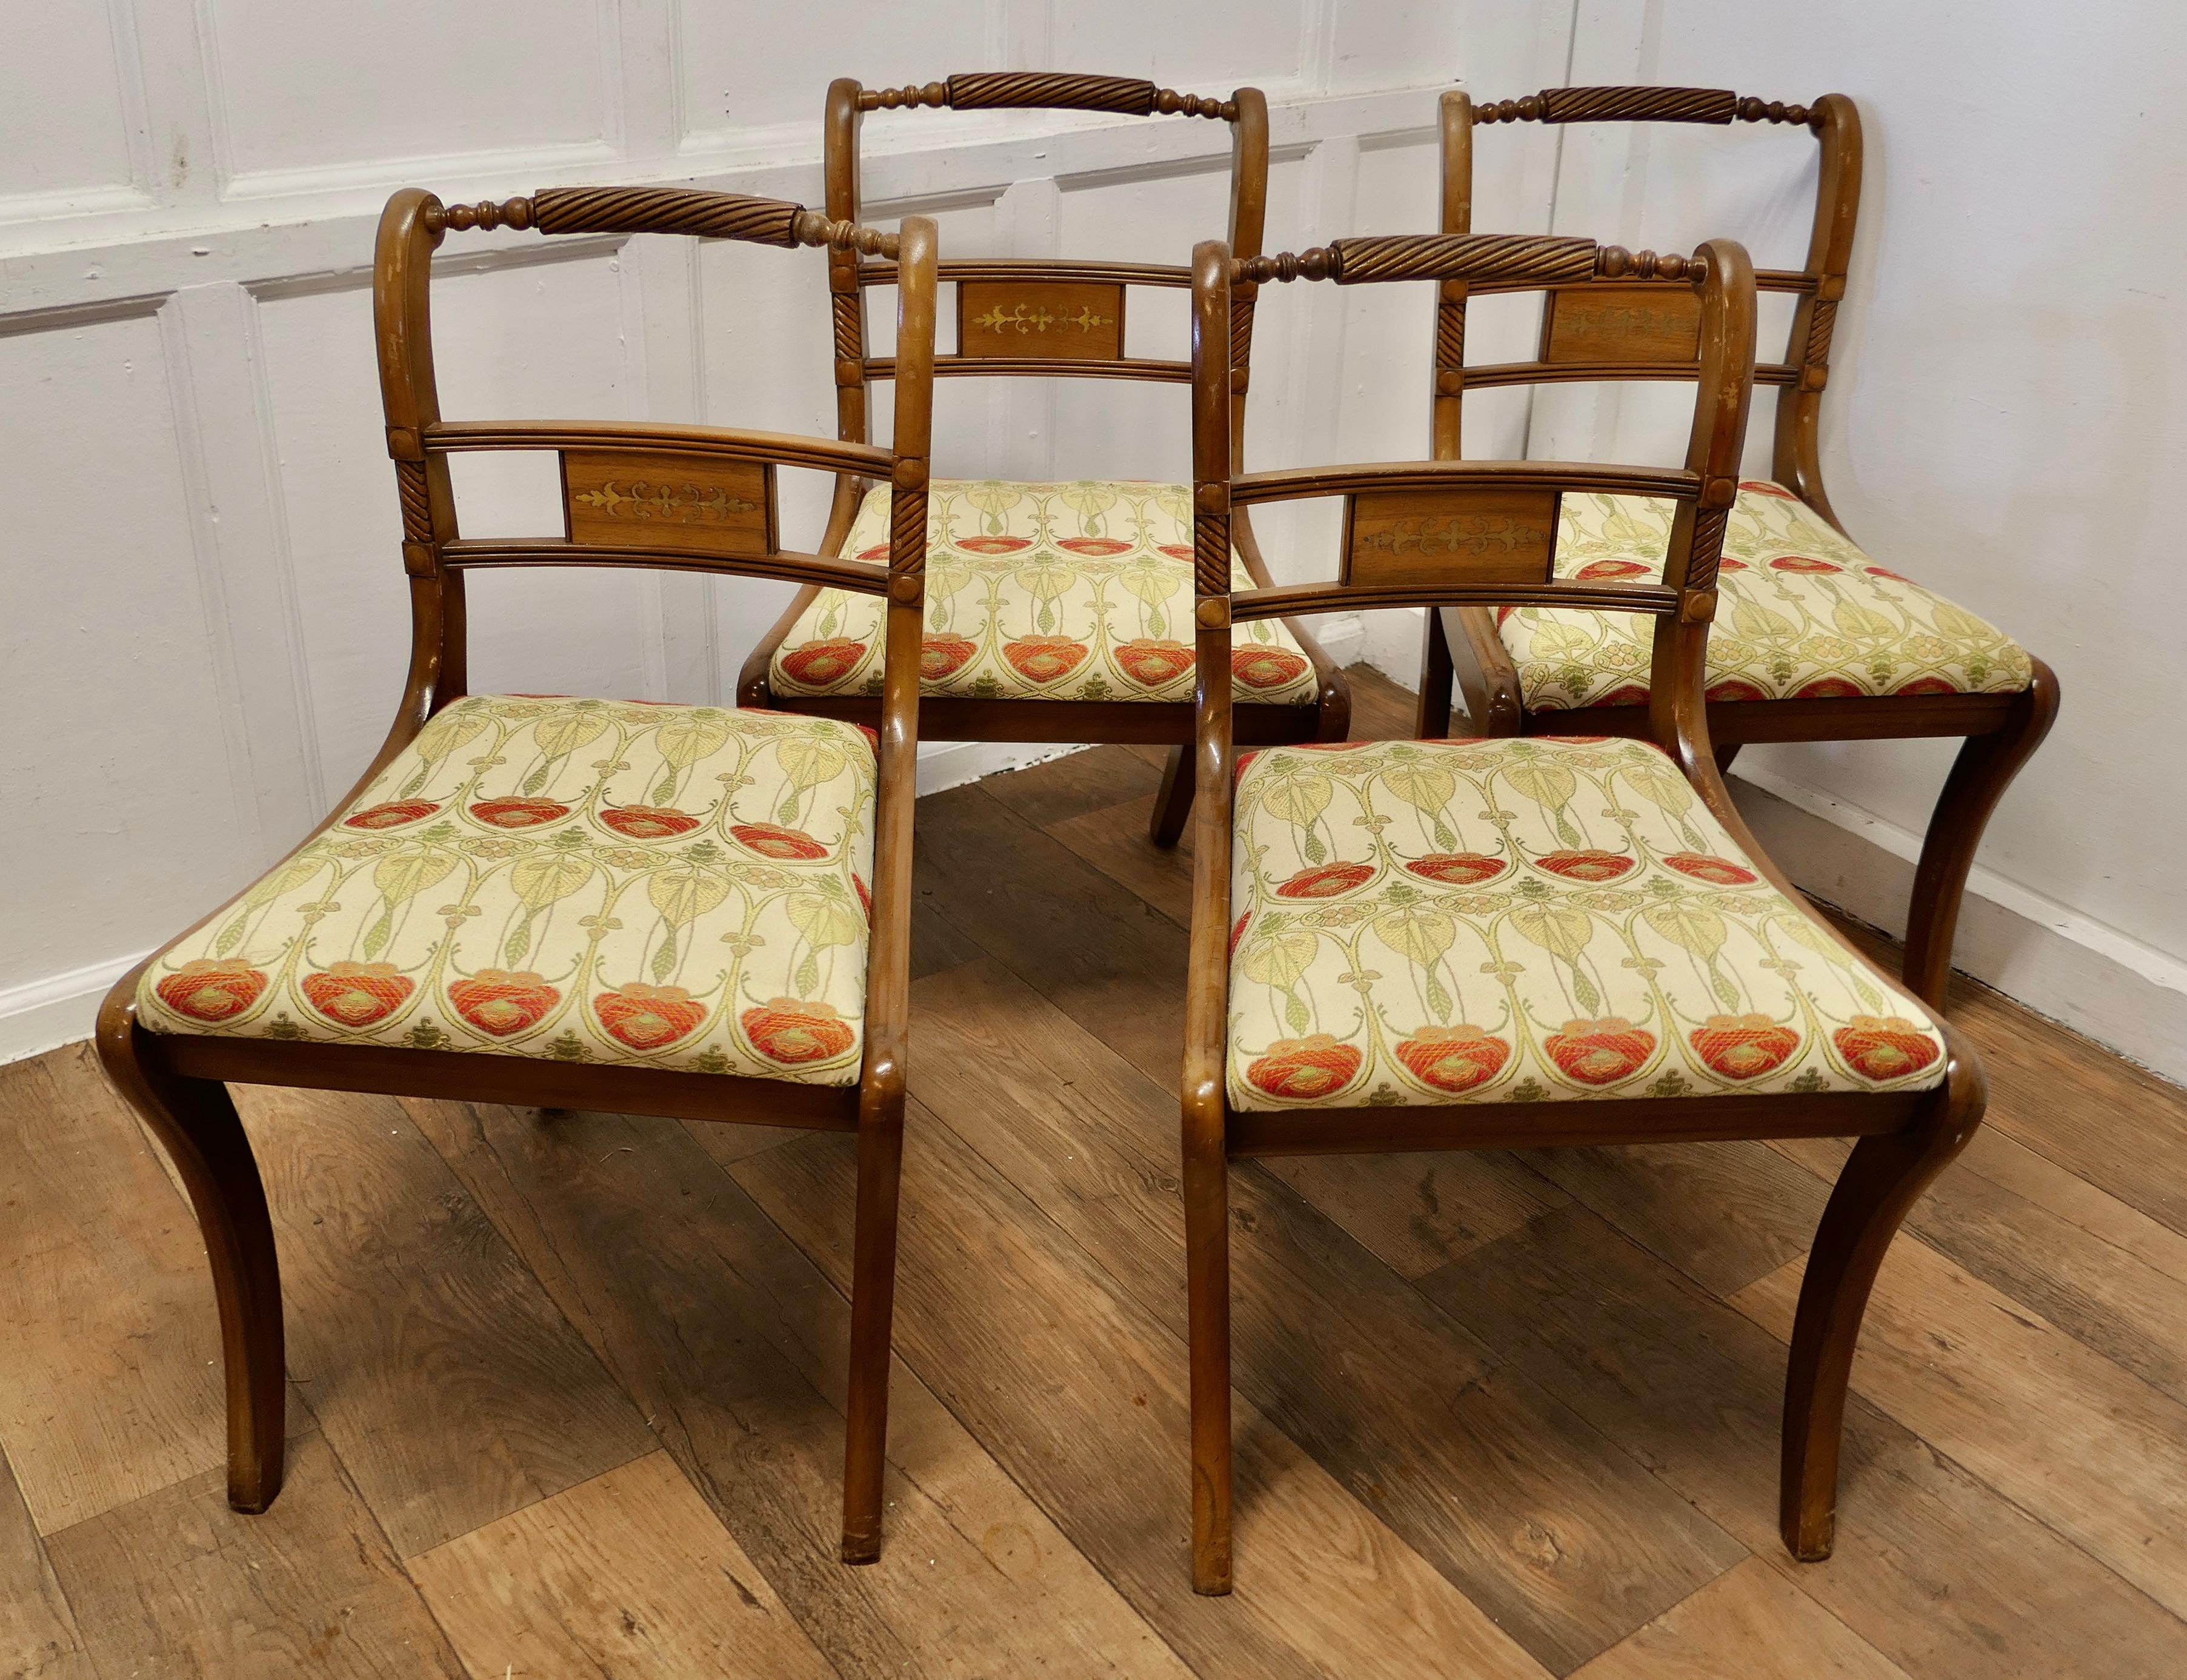 Ensemble de 4 chaises de salle à manger en noyer Art Nouveau

Un ensemble de chaises inhabituel, la traverse supérieure des dossiers de chaises est courbée et torsadée, le panneau arrière est incrusté de laiton.

Les chaises sont belles et élégantes